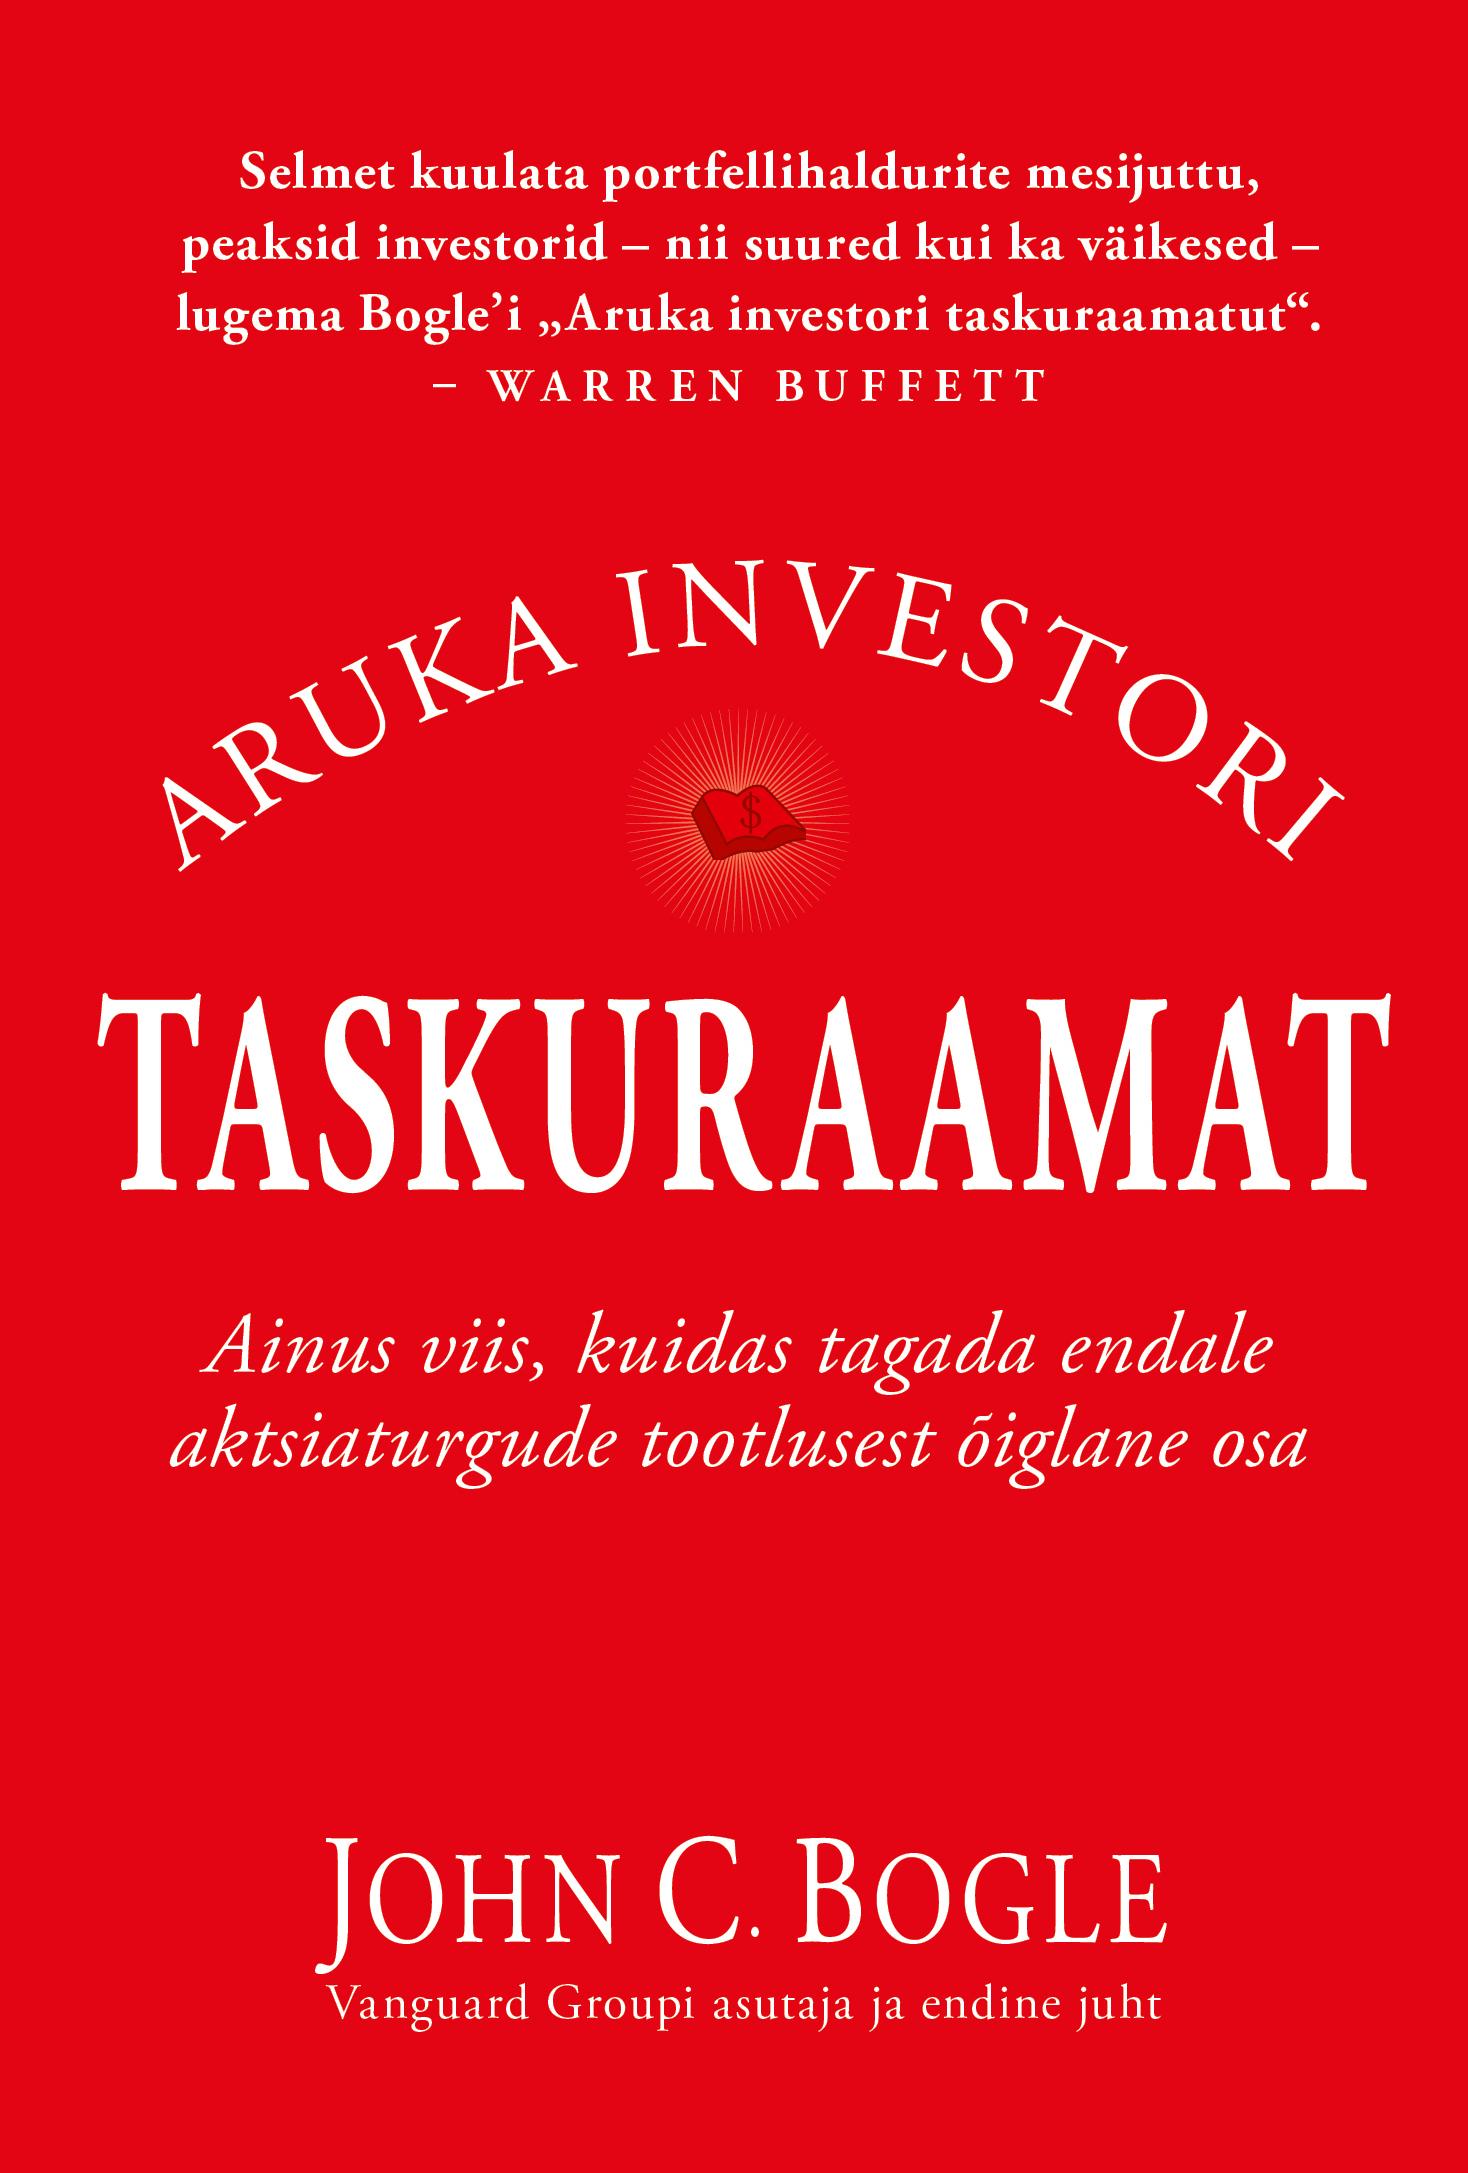 E-raamat: ARUKA INVESTORI TASKURAAMAT